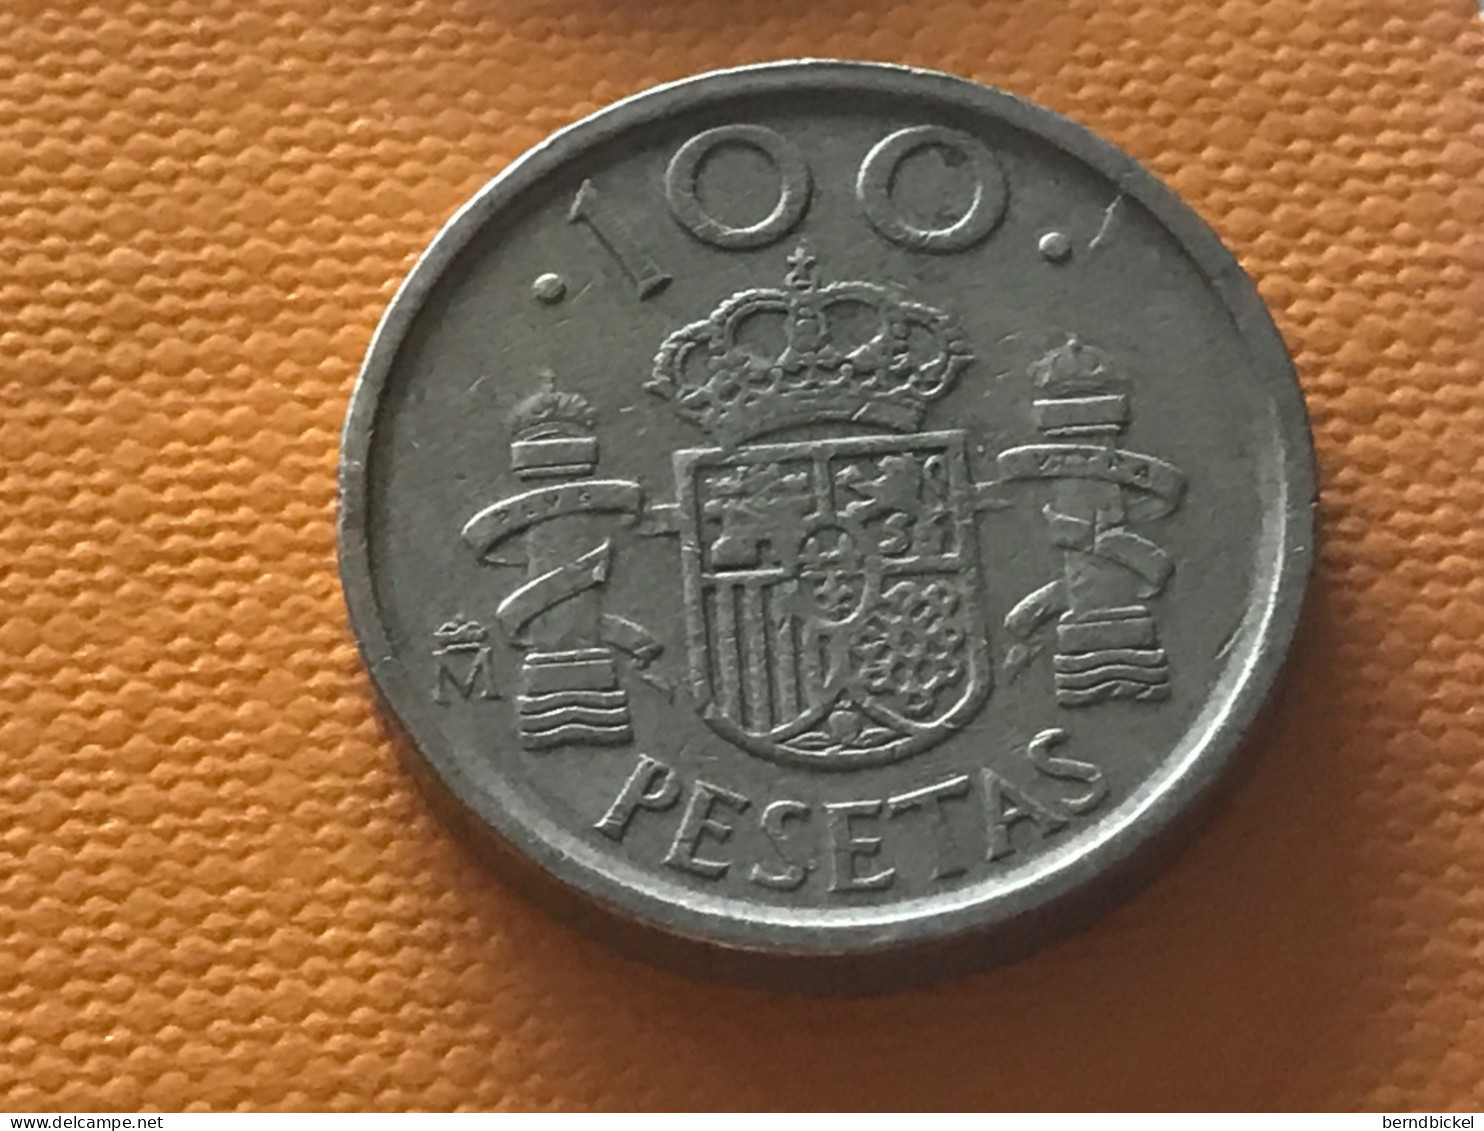 Münze Münzen Umlaufmünze Spanien 100 Pesetas 1992 - 100 Pesetas